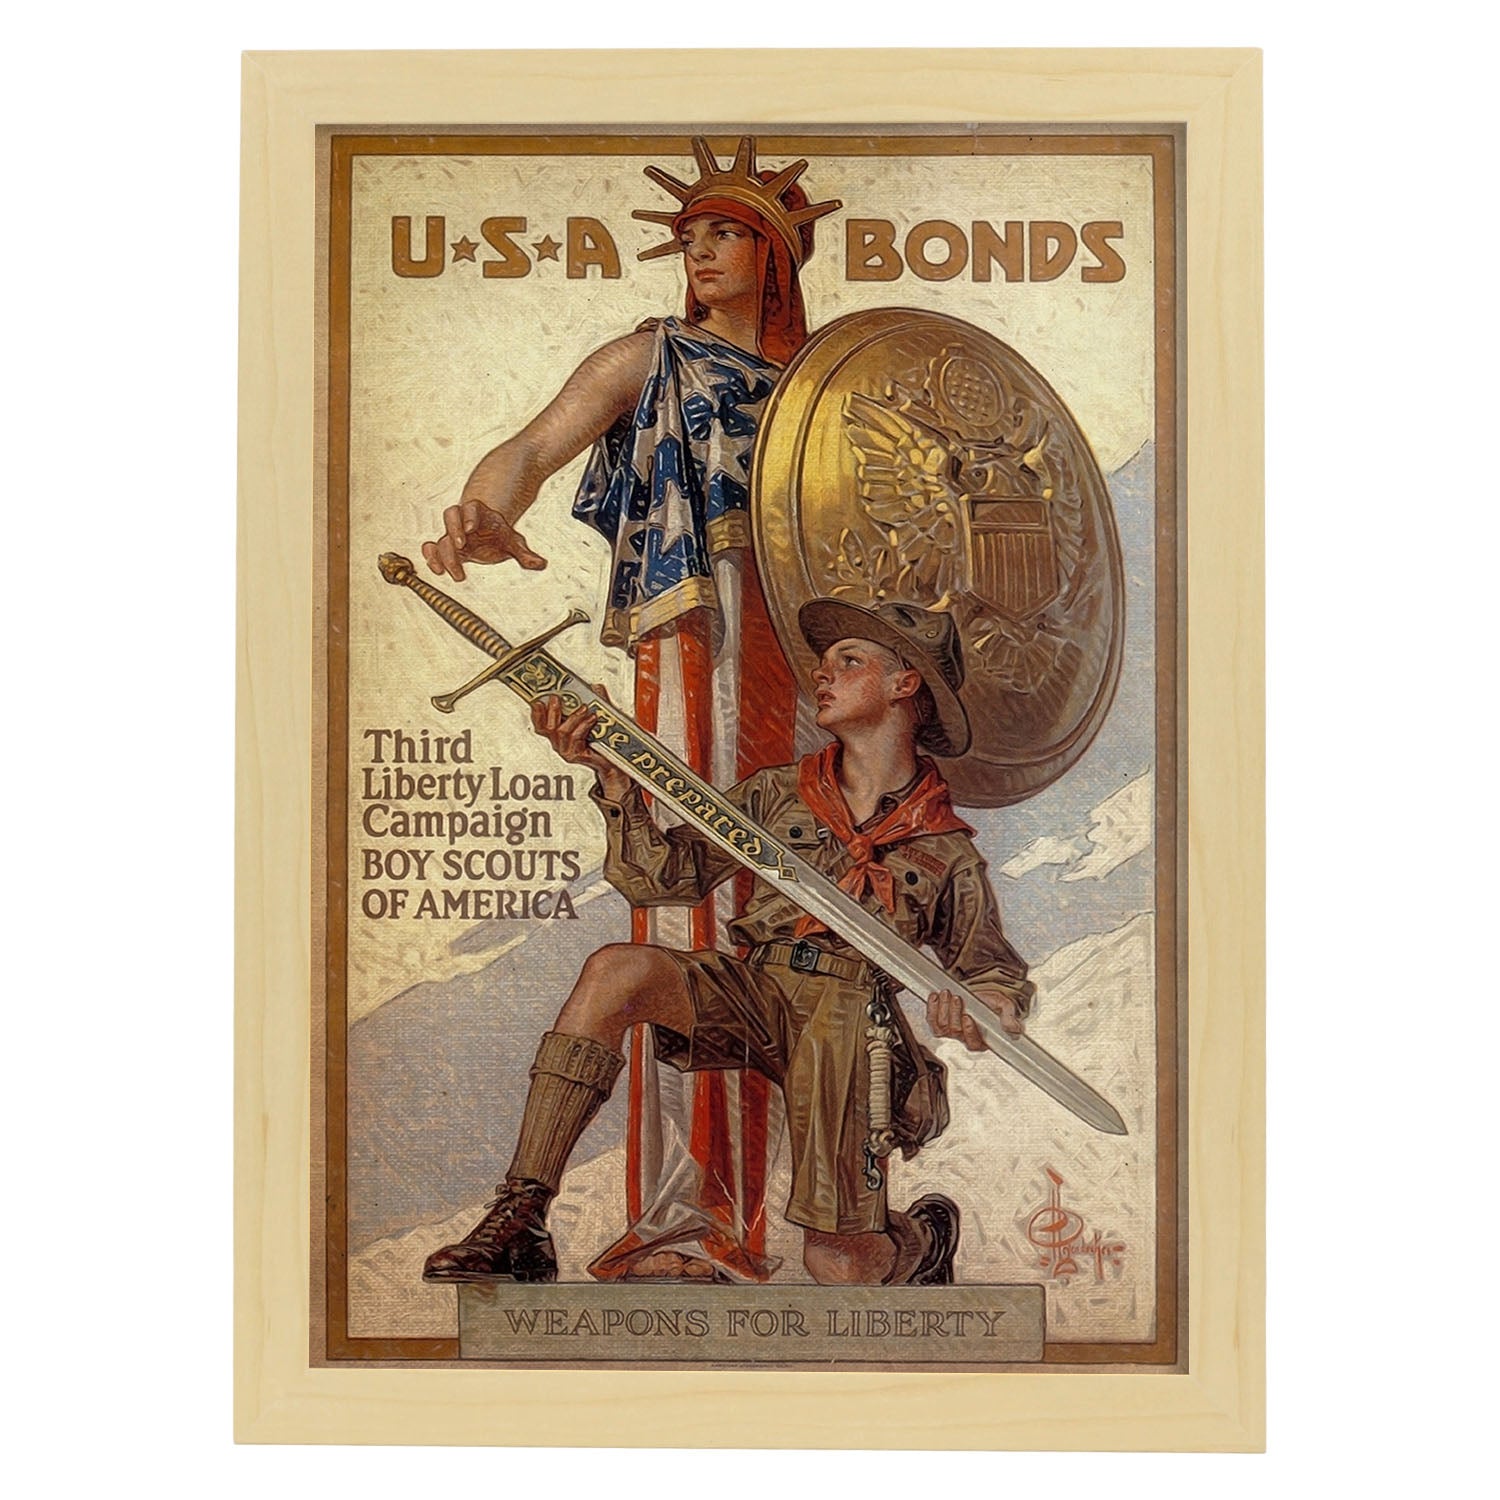 Poster vintage de Bonos de USA. con imágenes vintage y de publicidad antigua.-Artwork-Nacnic-A4-Marco Madera clara-Nacnic Estudio SL